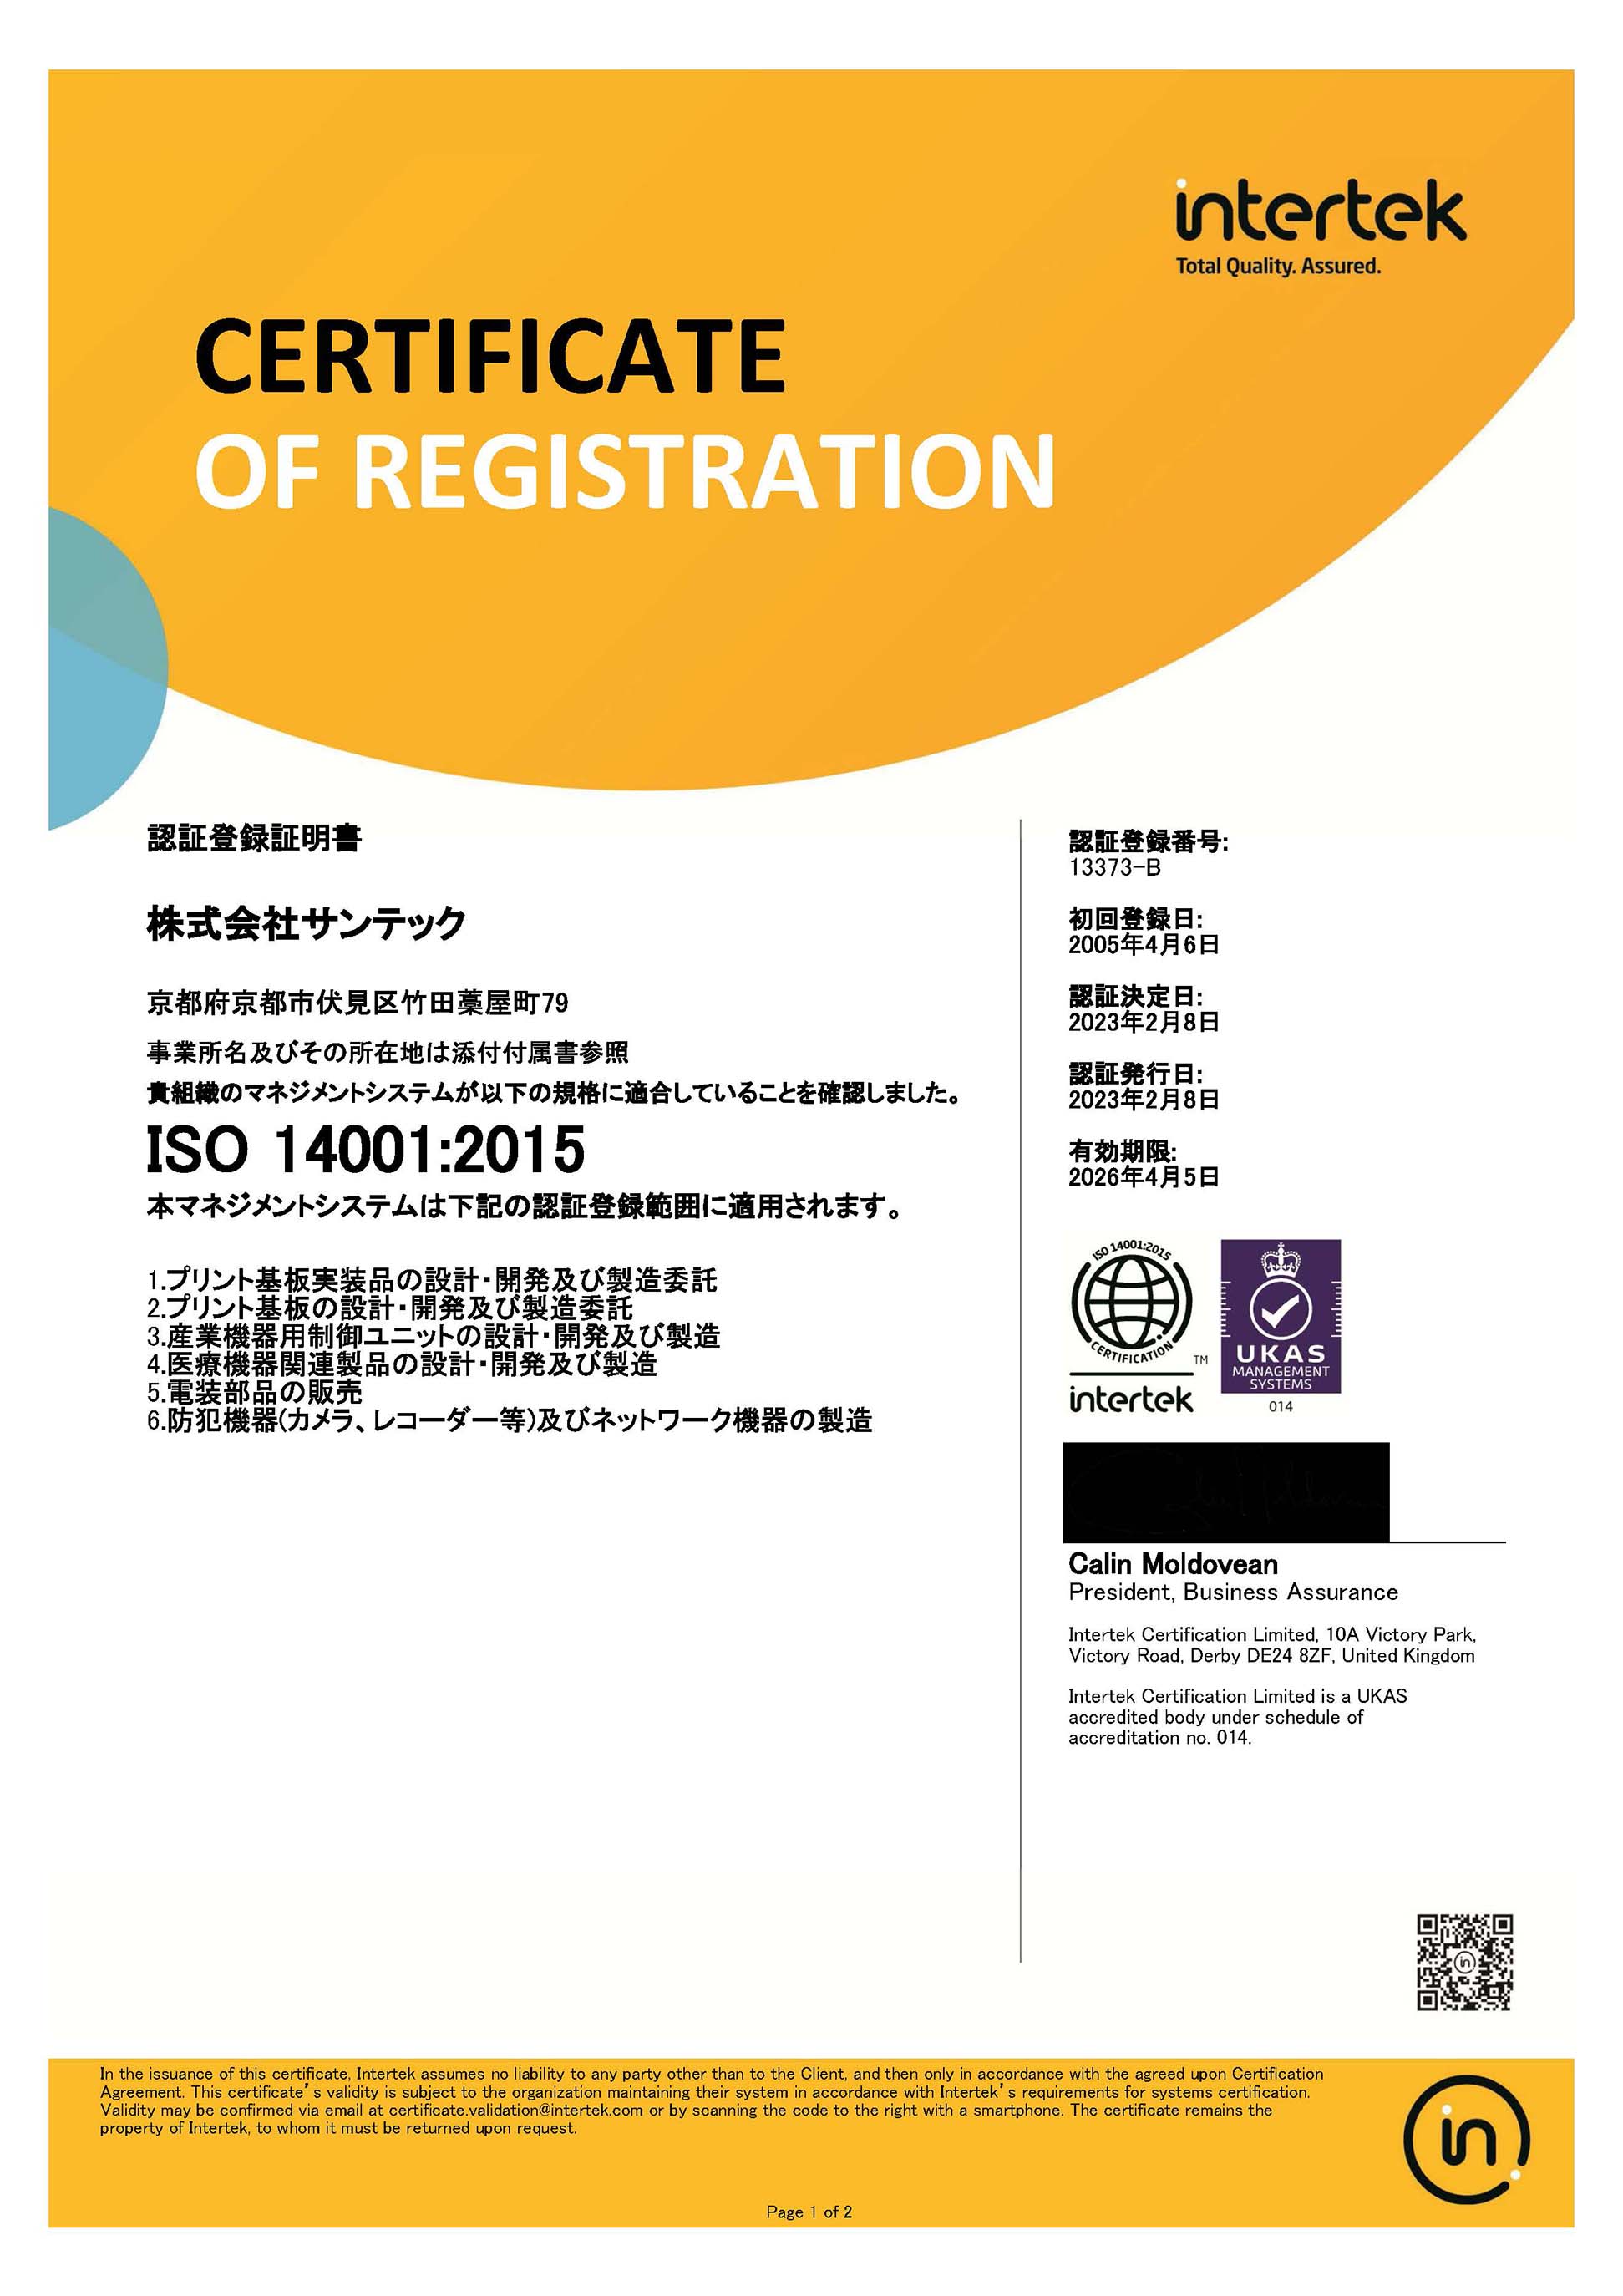 ISO14001登録証1